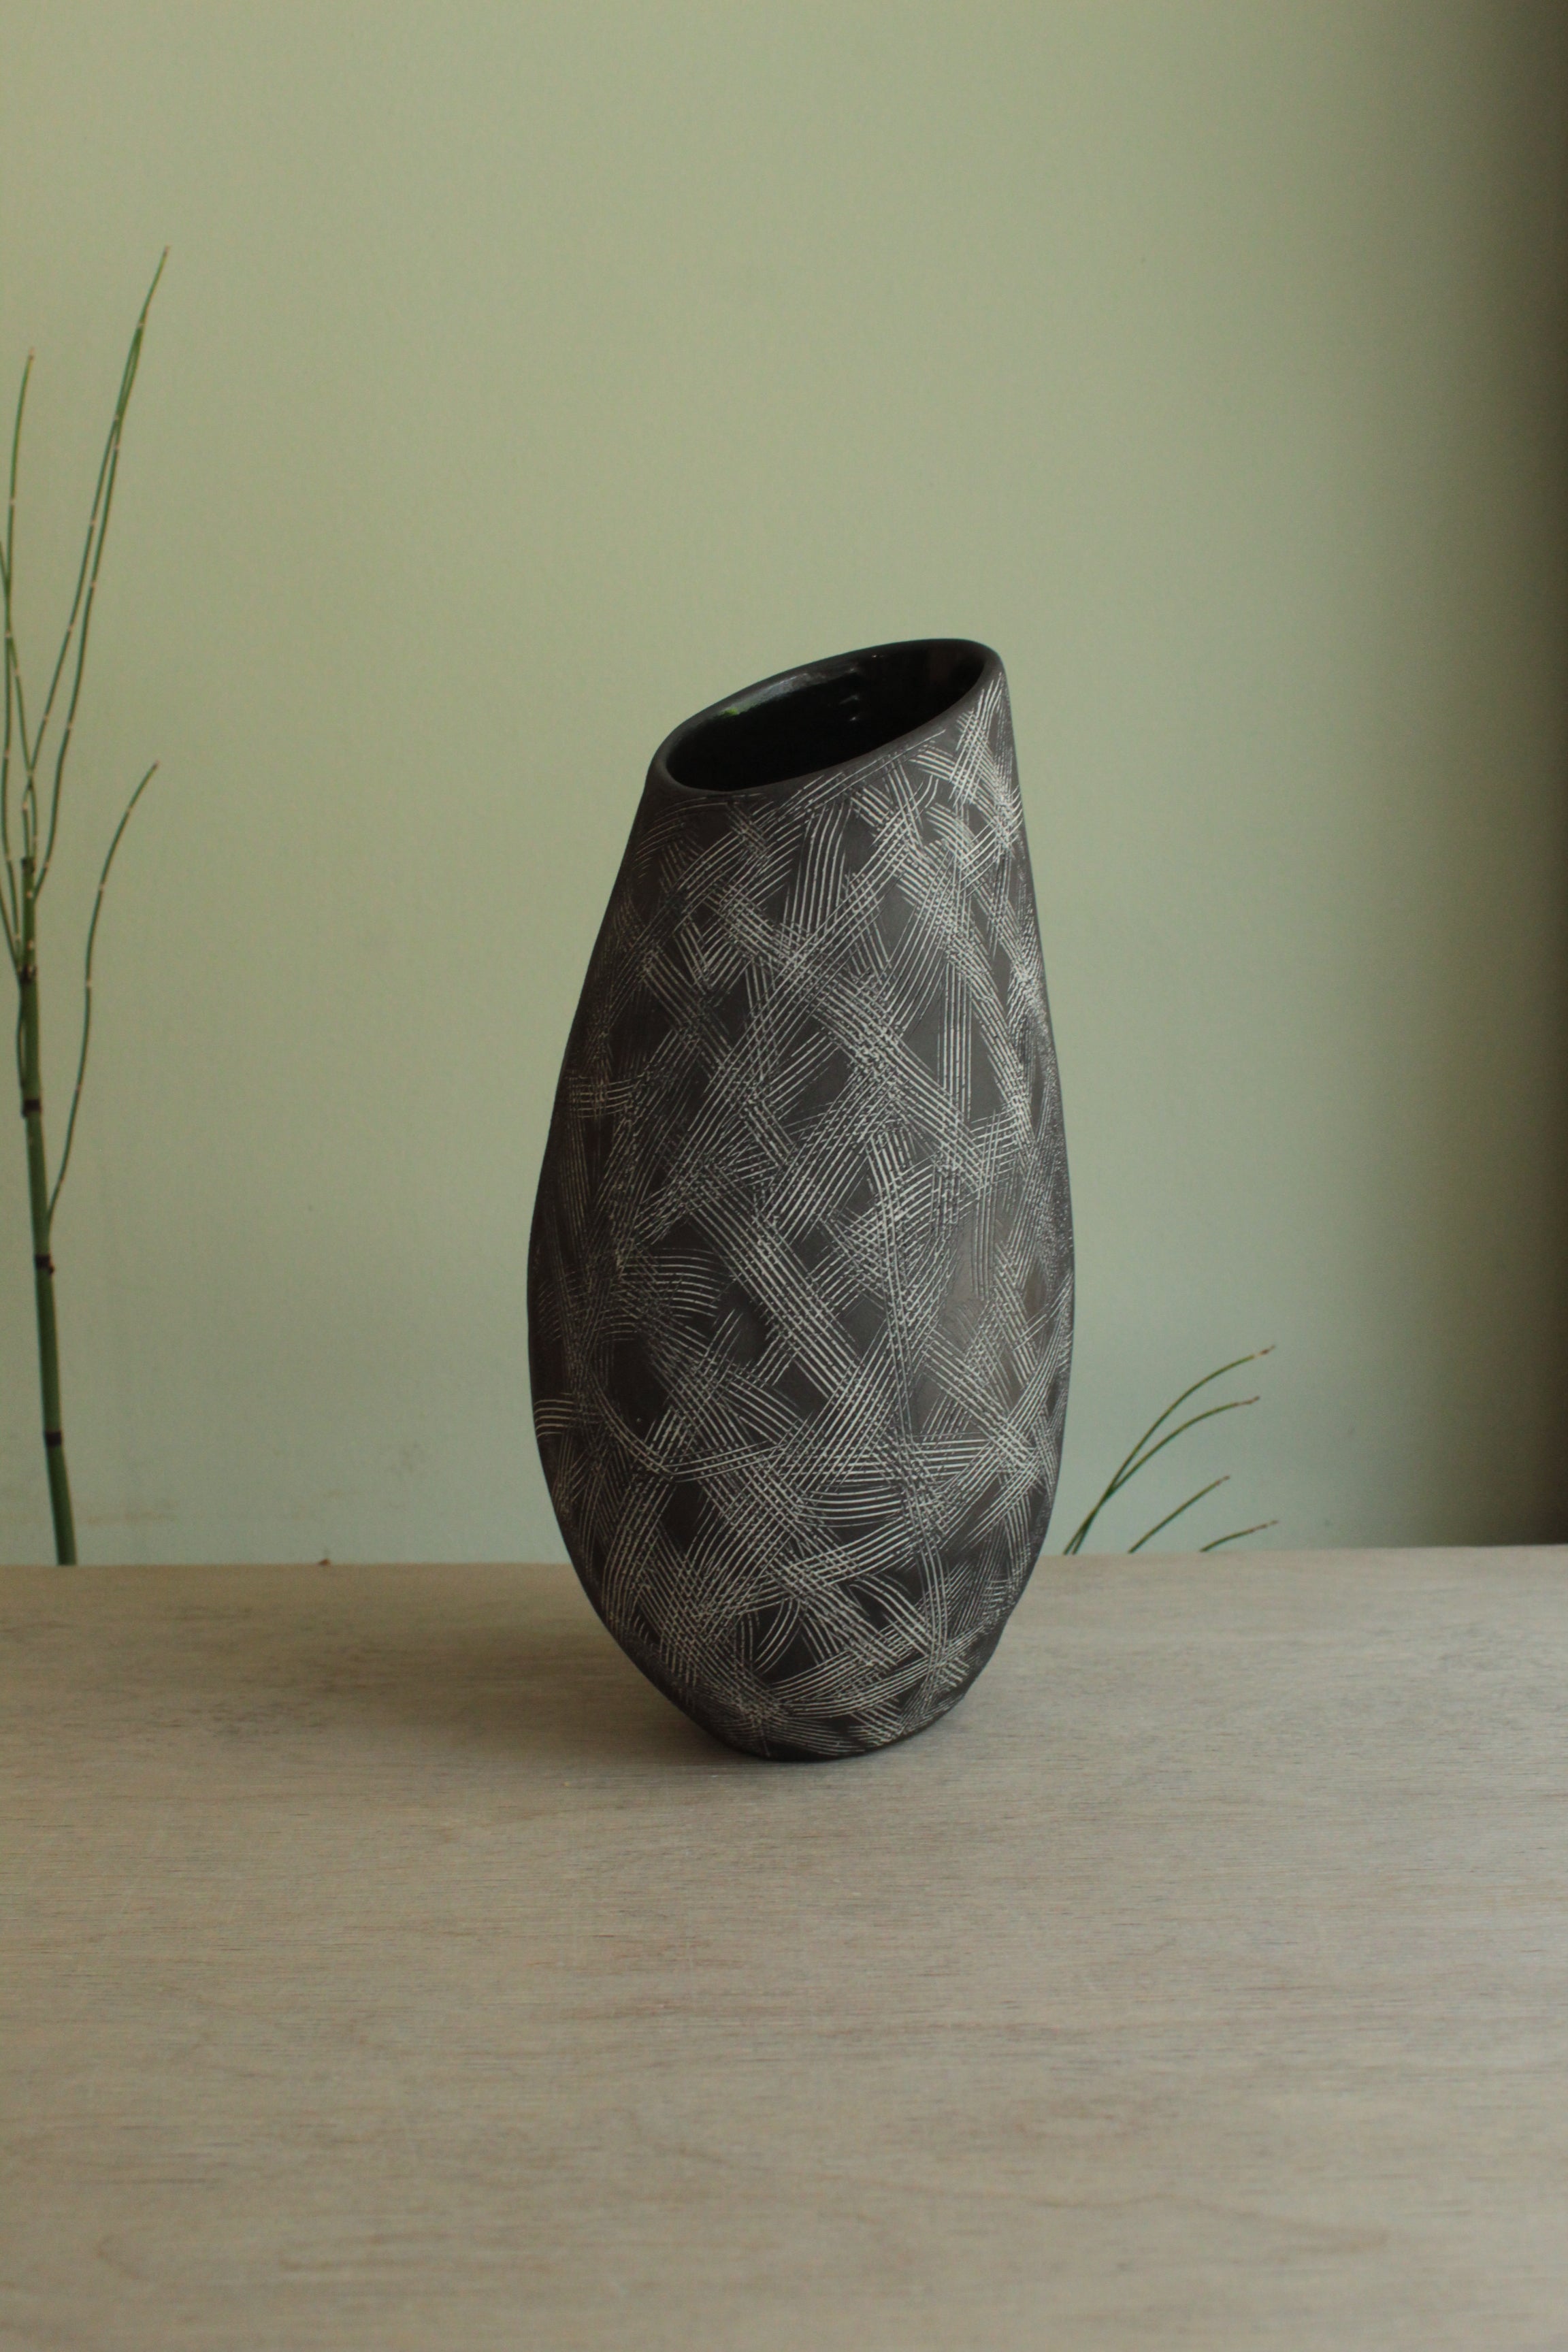 Black and white vase